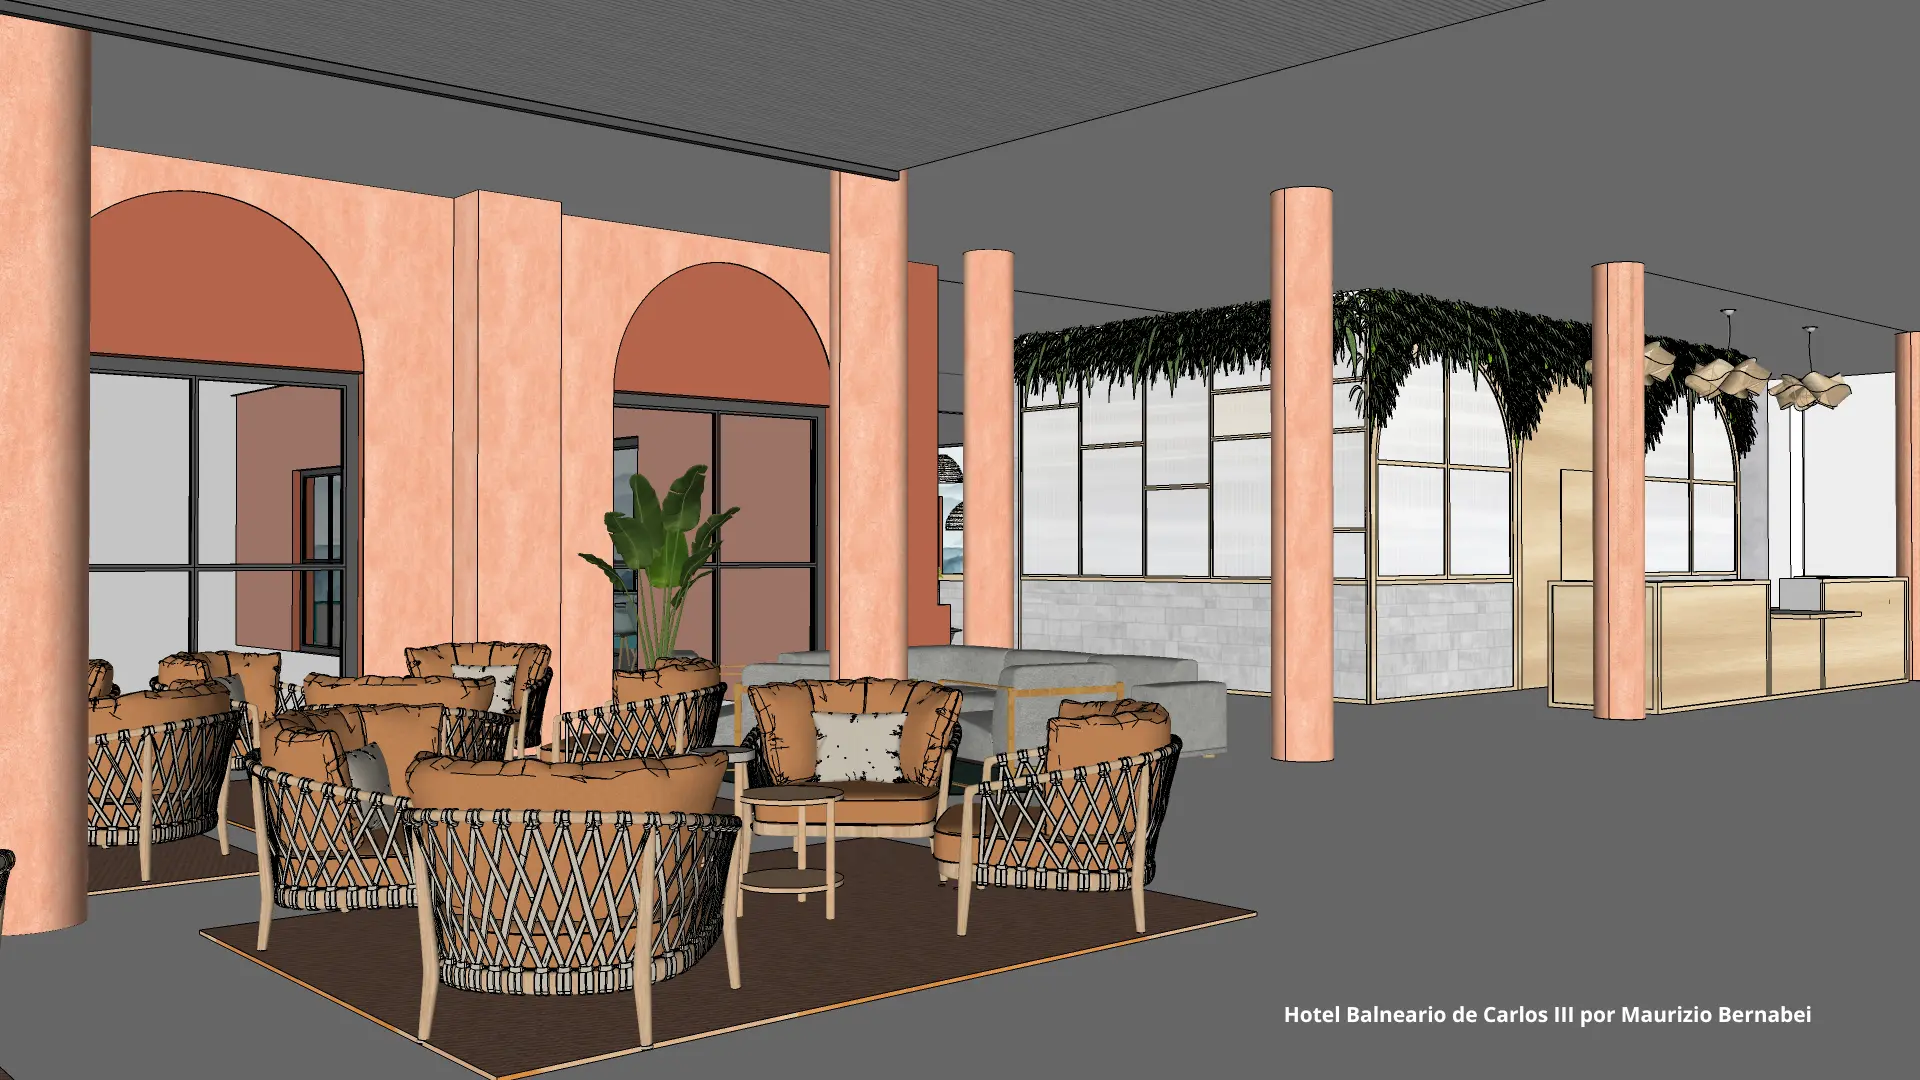 Modelos 3D SketchUp Hotel Balneario de Carlos III por Maurizio Bernabei 4